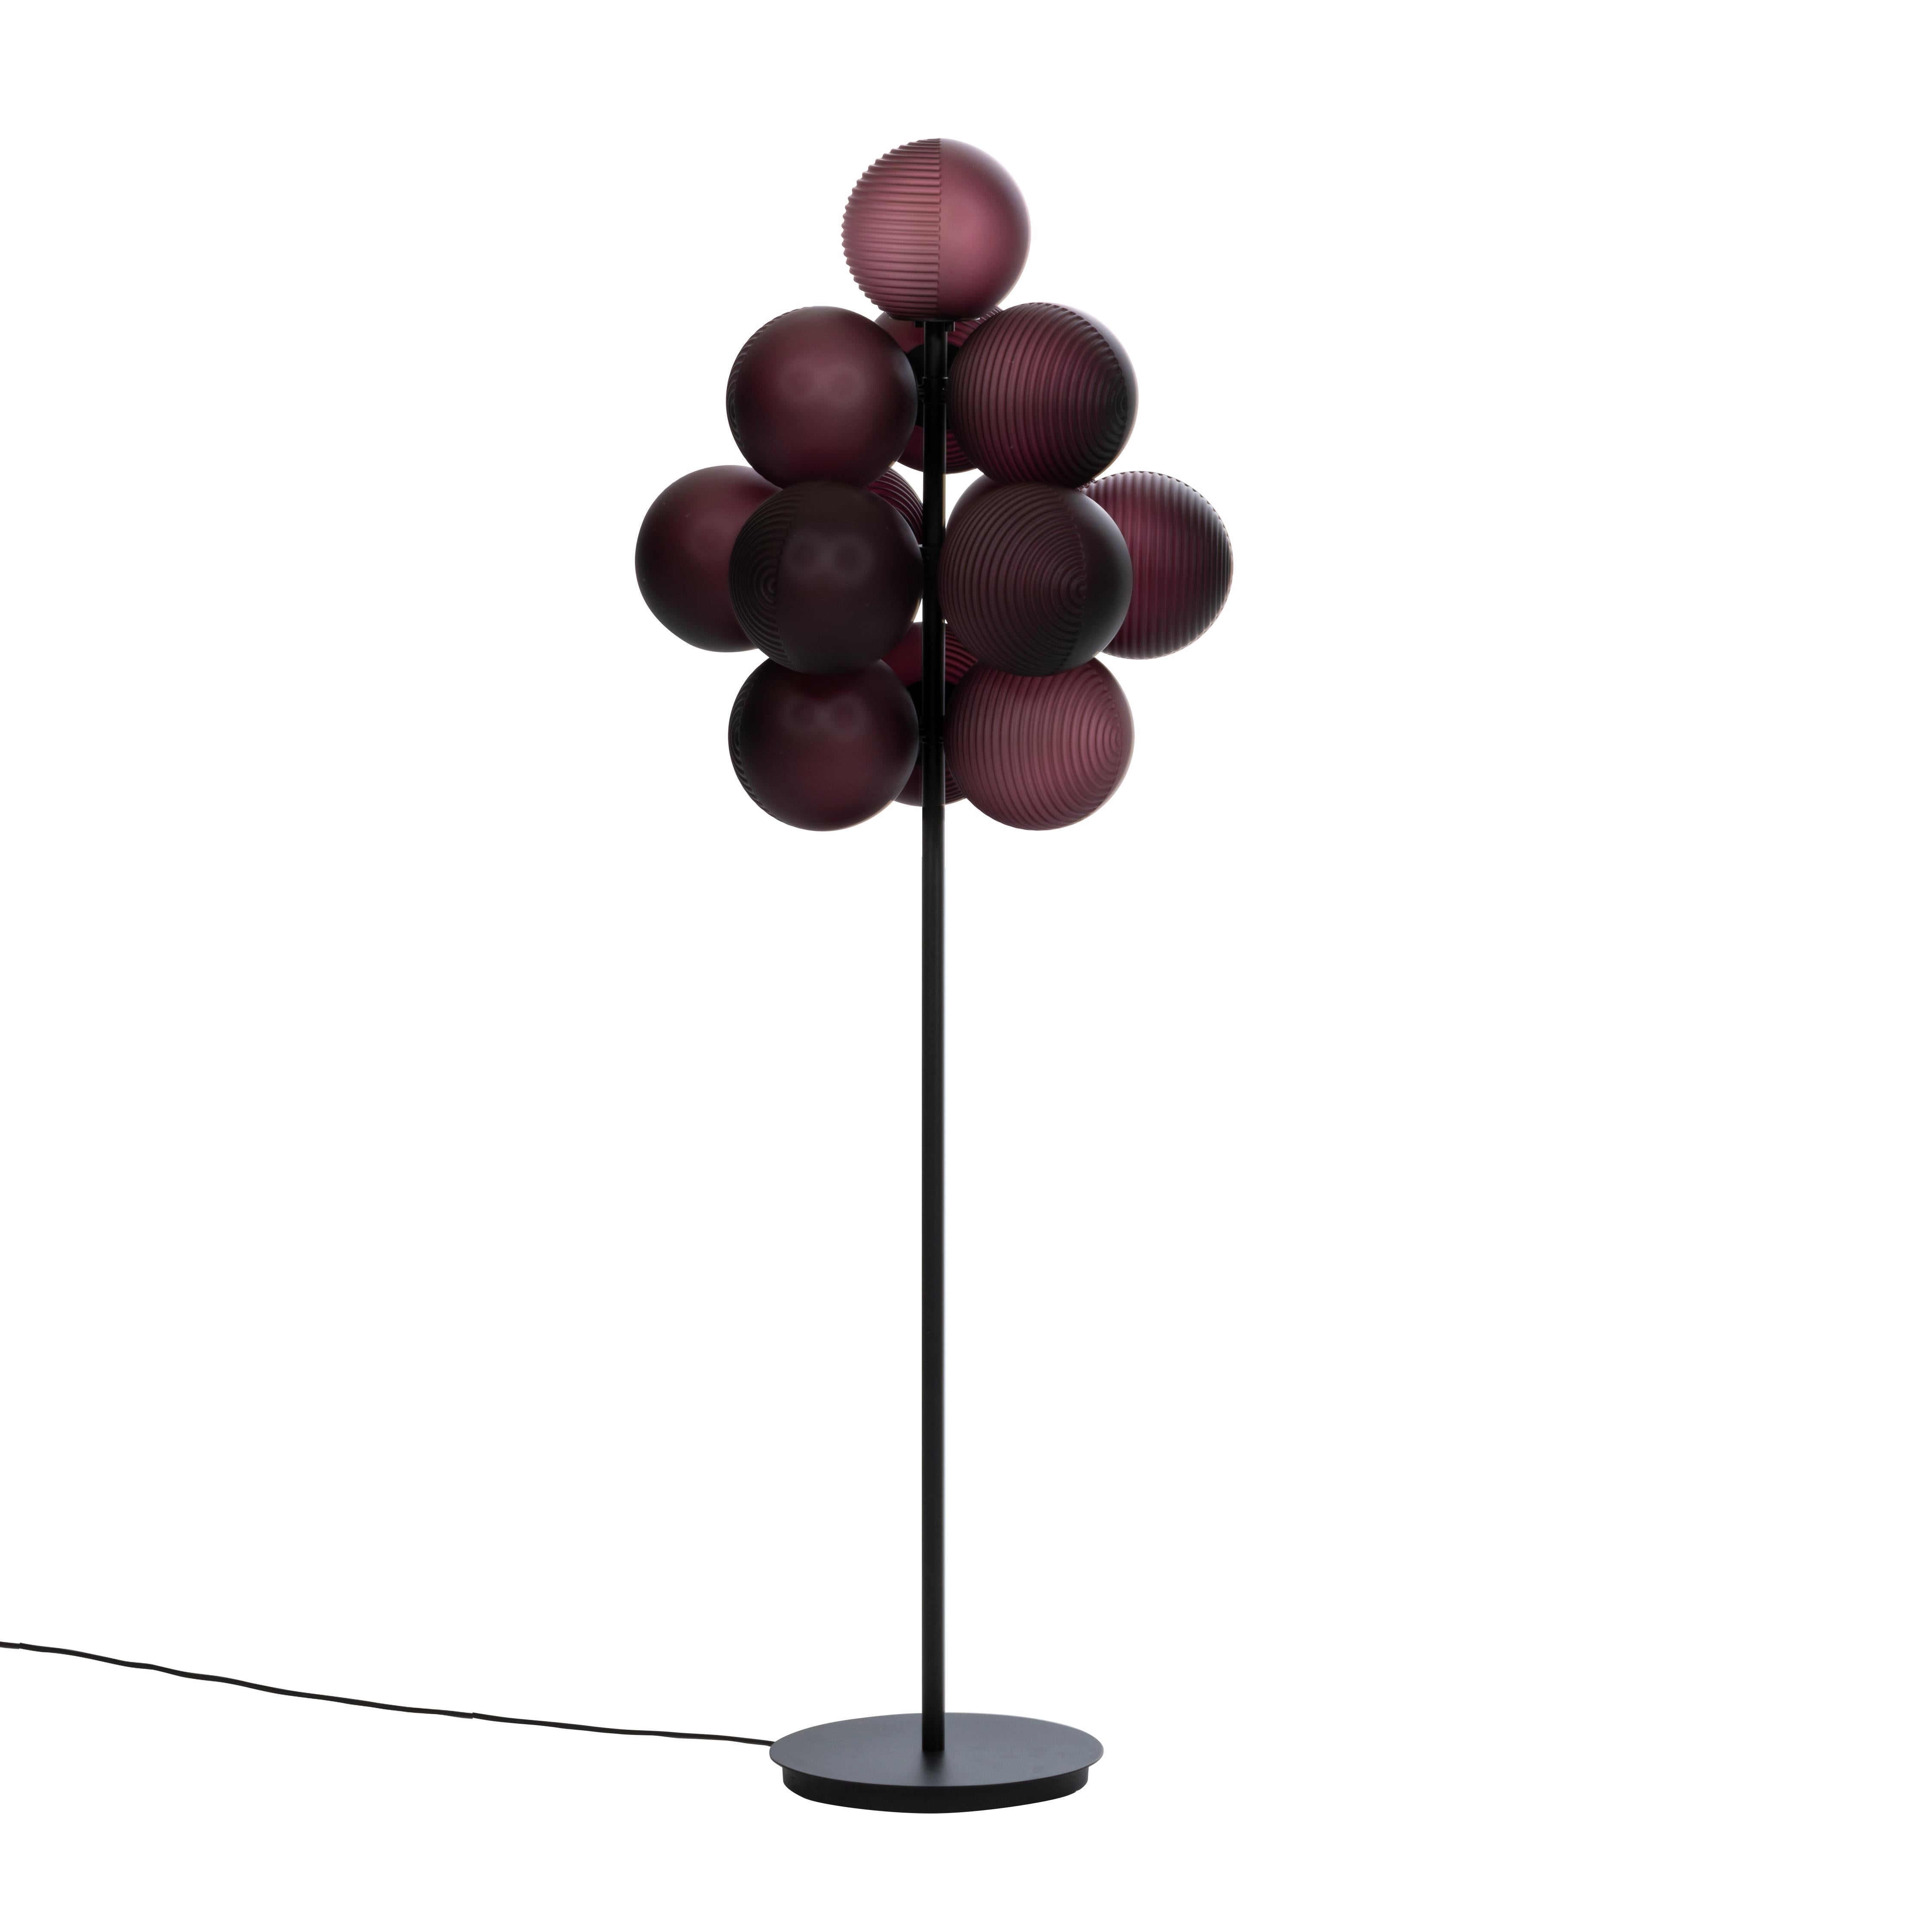 Lampadaire Stellar grape big aubergine acetato black de Pulpo.
Dimensions : D61 x H158 cm : D61 x H158 cm.
Matériaux : verre soufflé coloré, acier peint par poudrage.

Disponible également en différentes finitions. La hauteur peut être